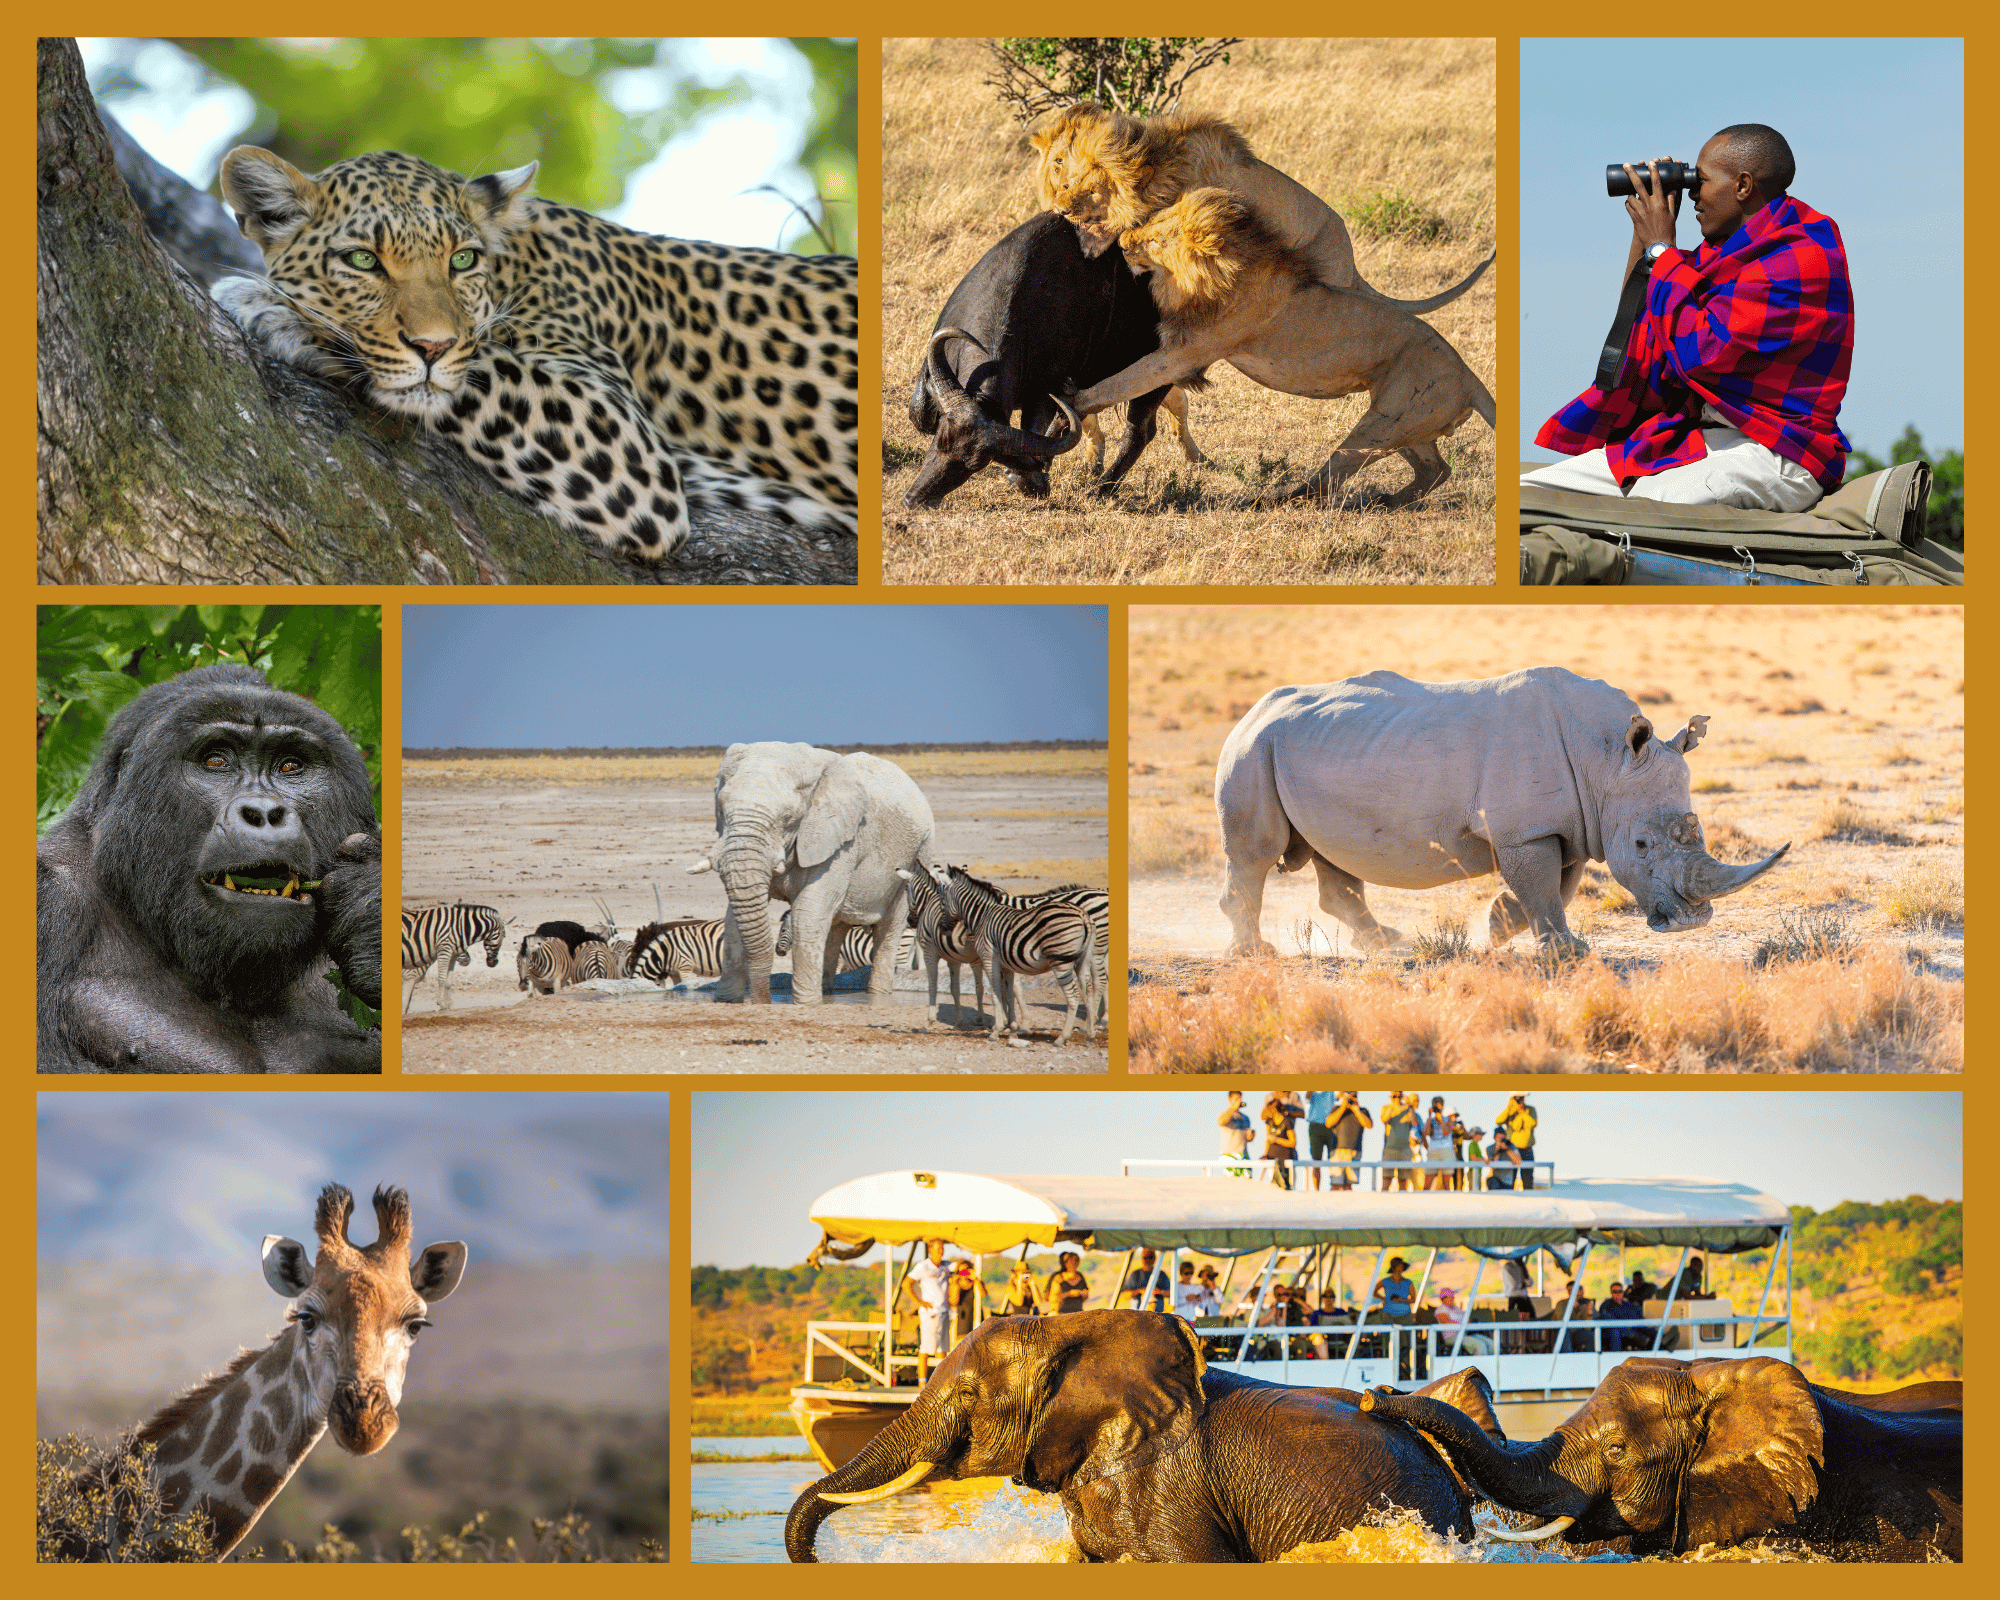 An African safari- The New Indian Express